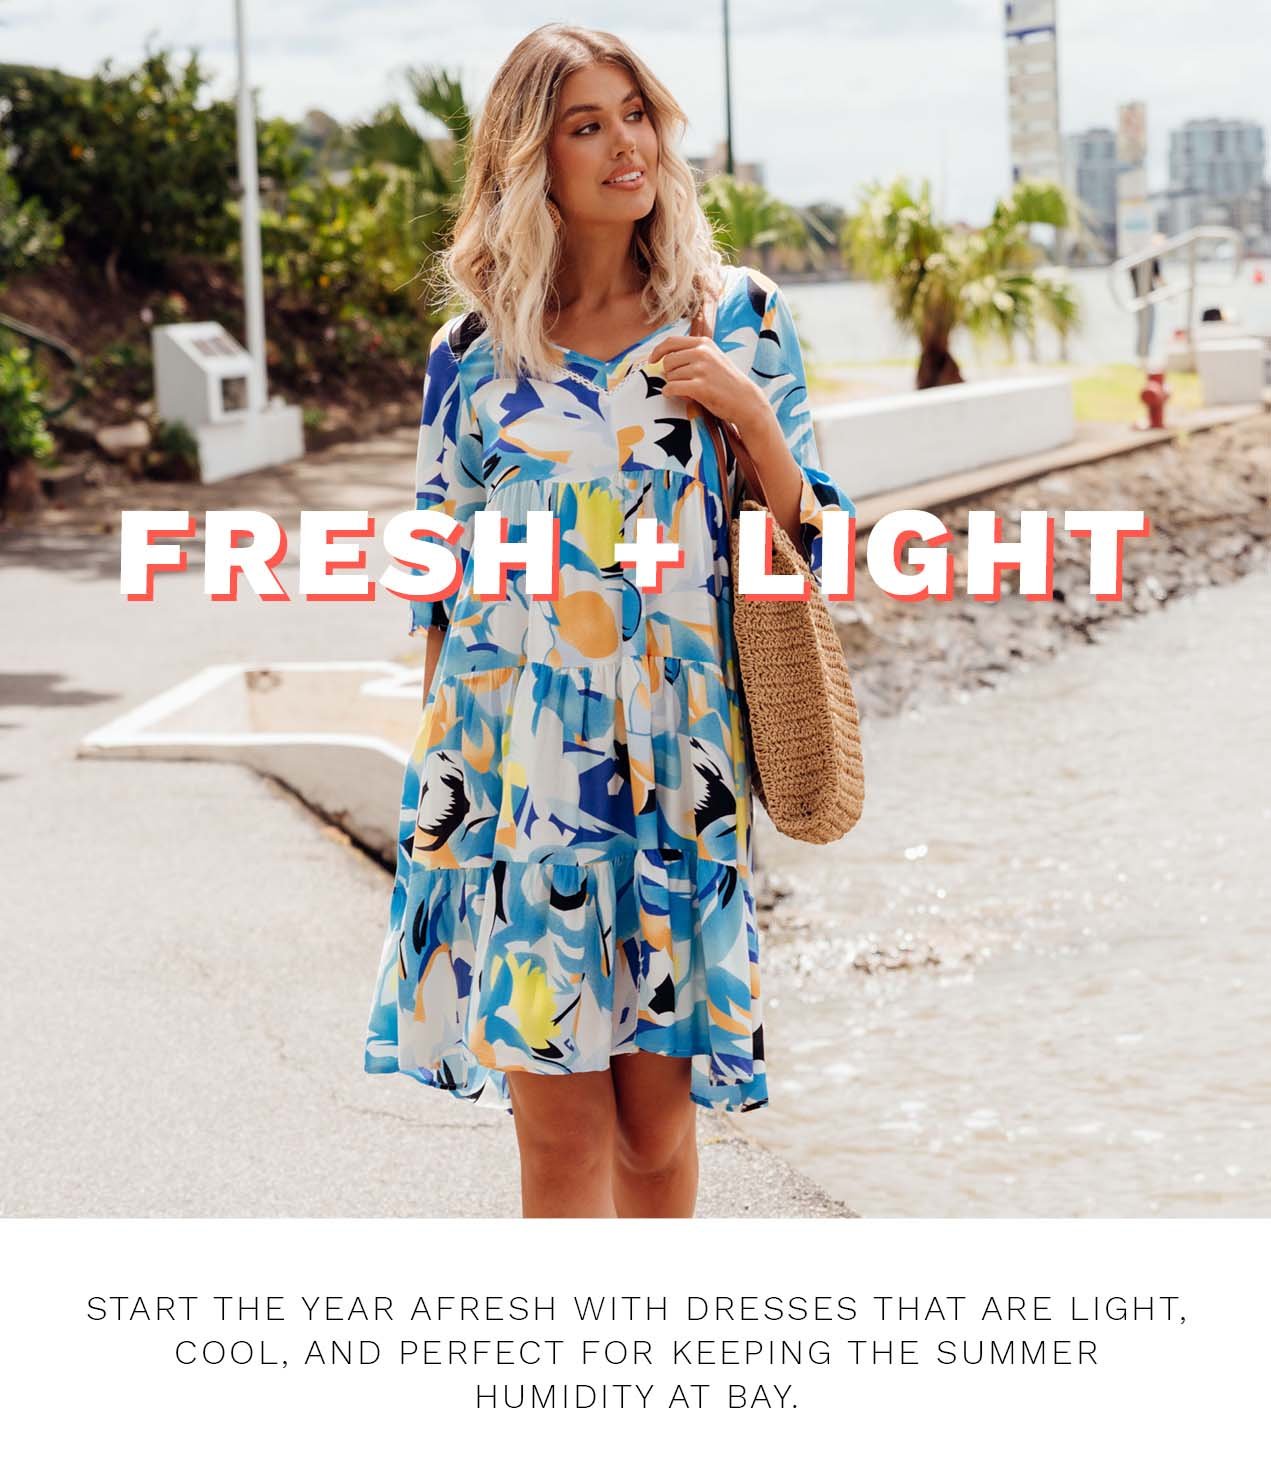 Fresh + Light Summer Dresses ...